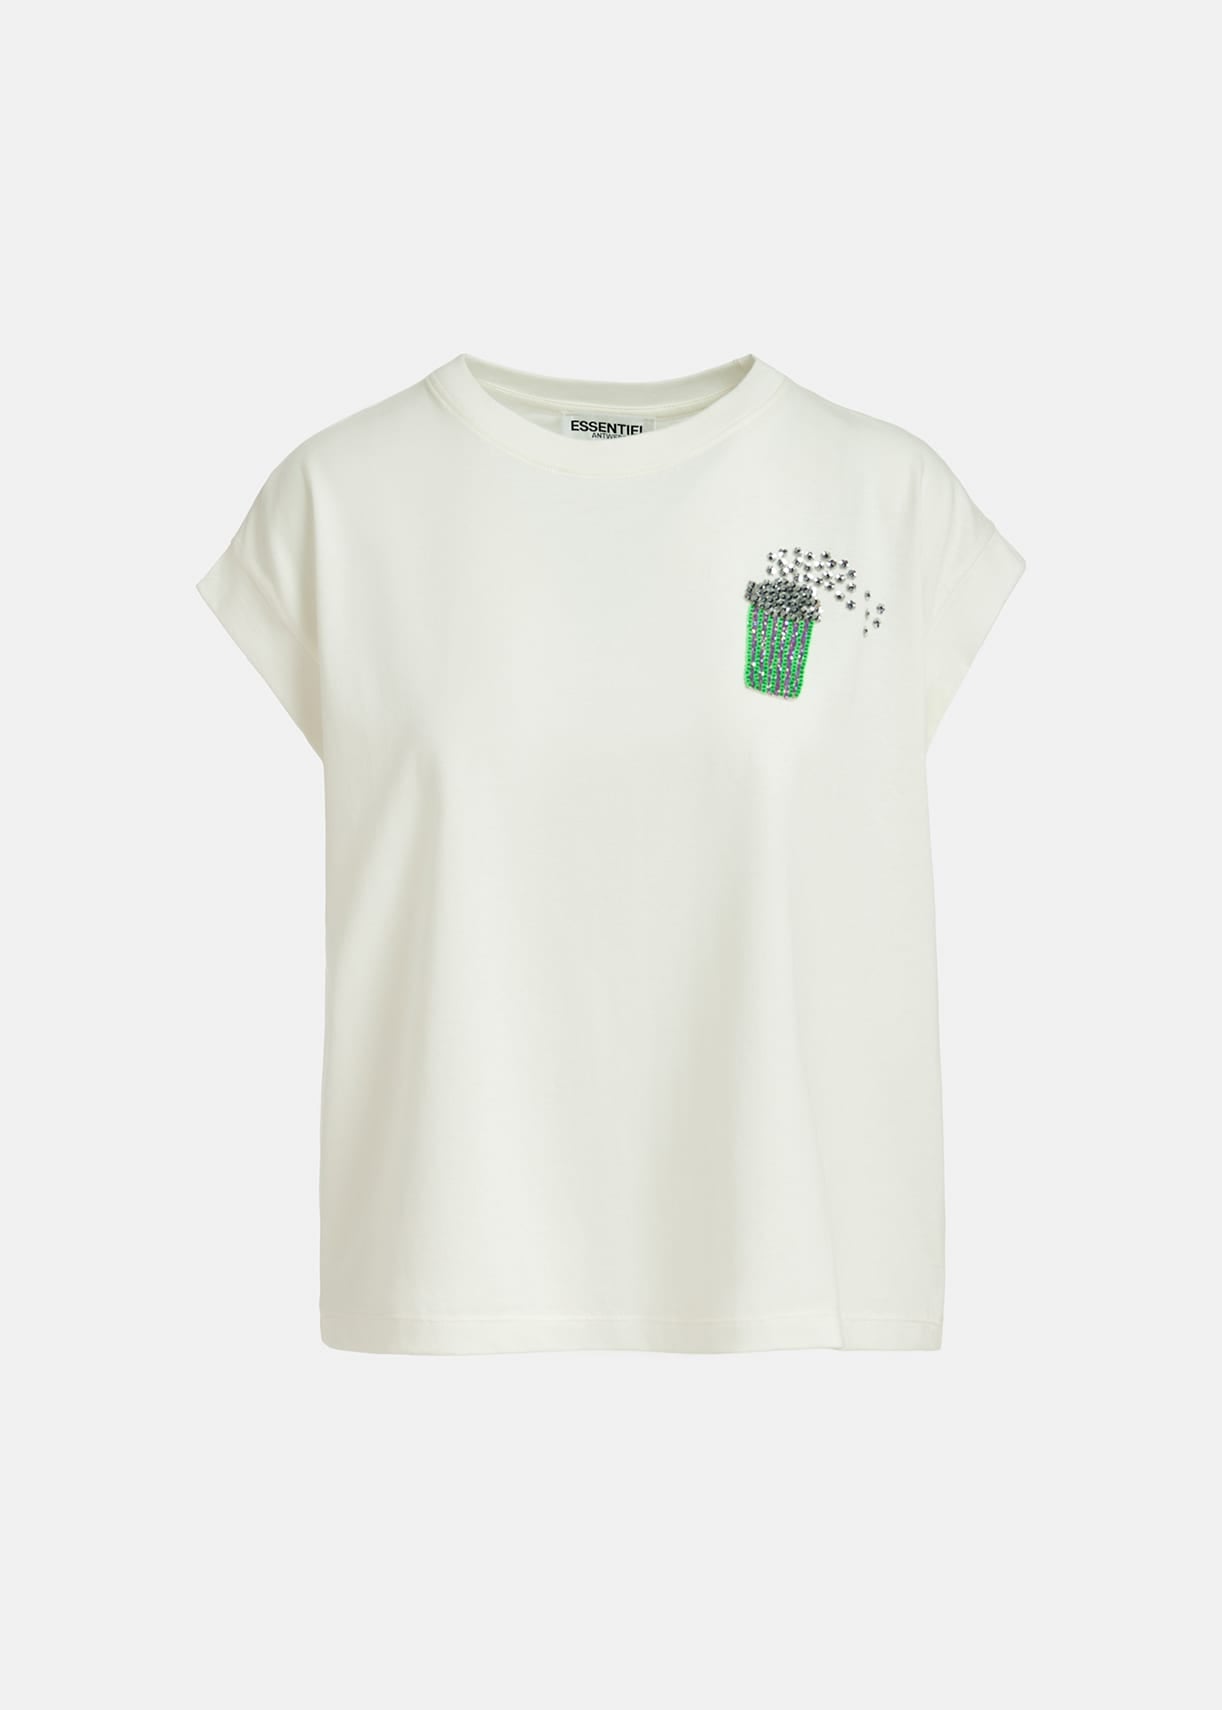 Faustina - cremefarbenes T-Shirt aus Bio-Baumwolle mit Popcorn-Stickerei